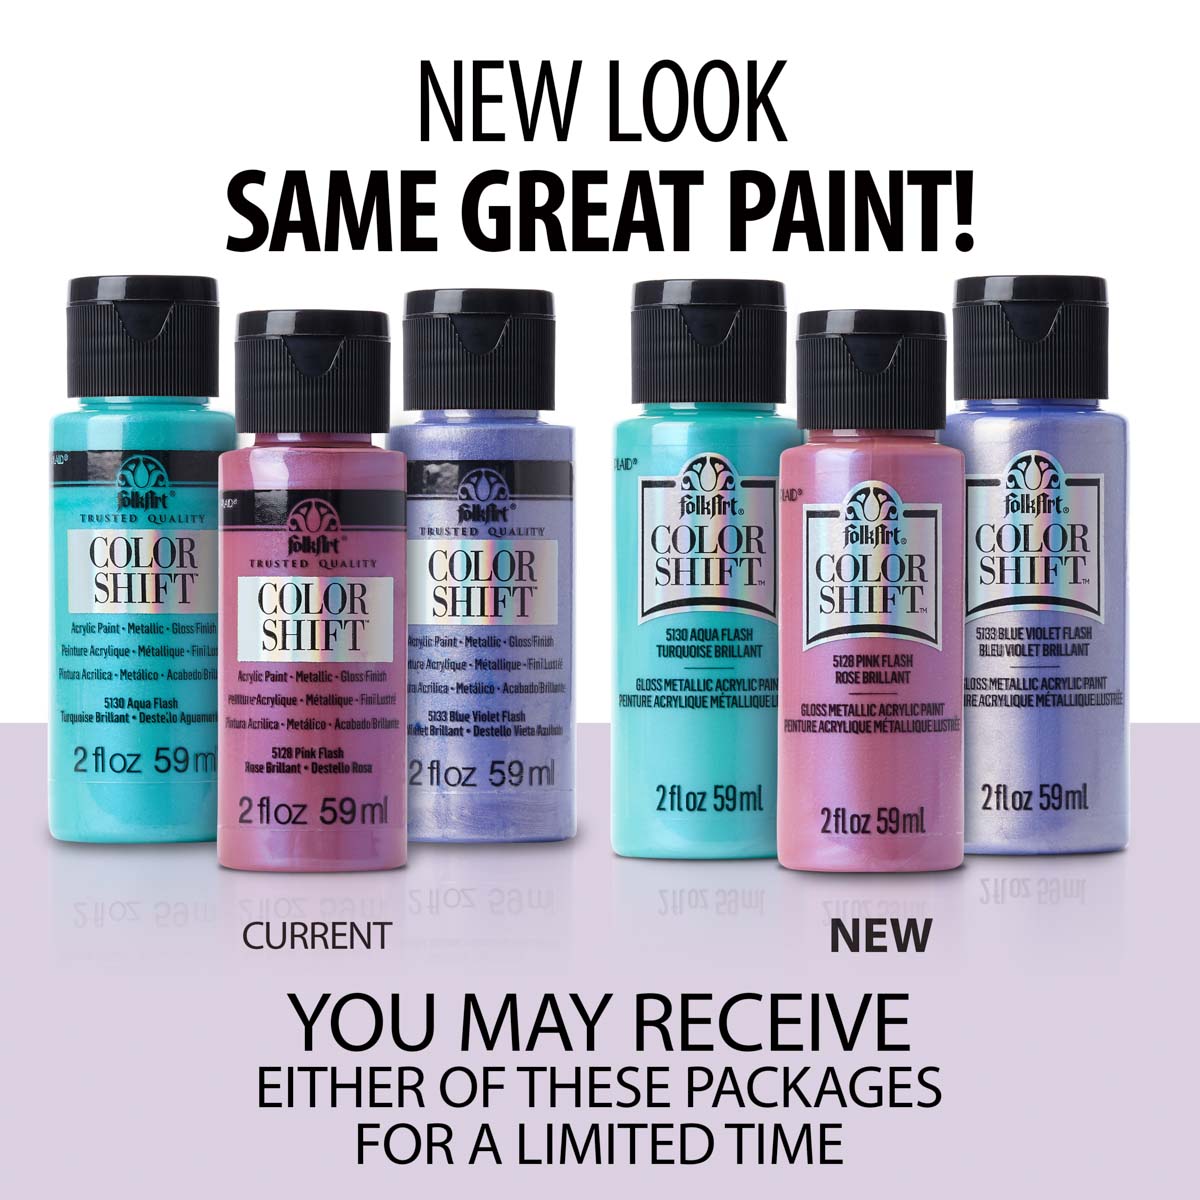 FolkArt ® Color Shift™ Acrylic Paint - Pastel Blue, 2 oz. - 12008